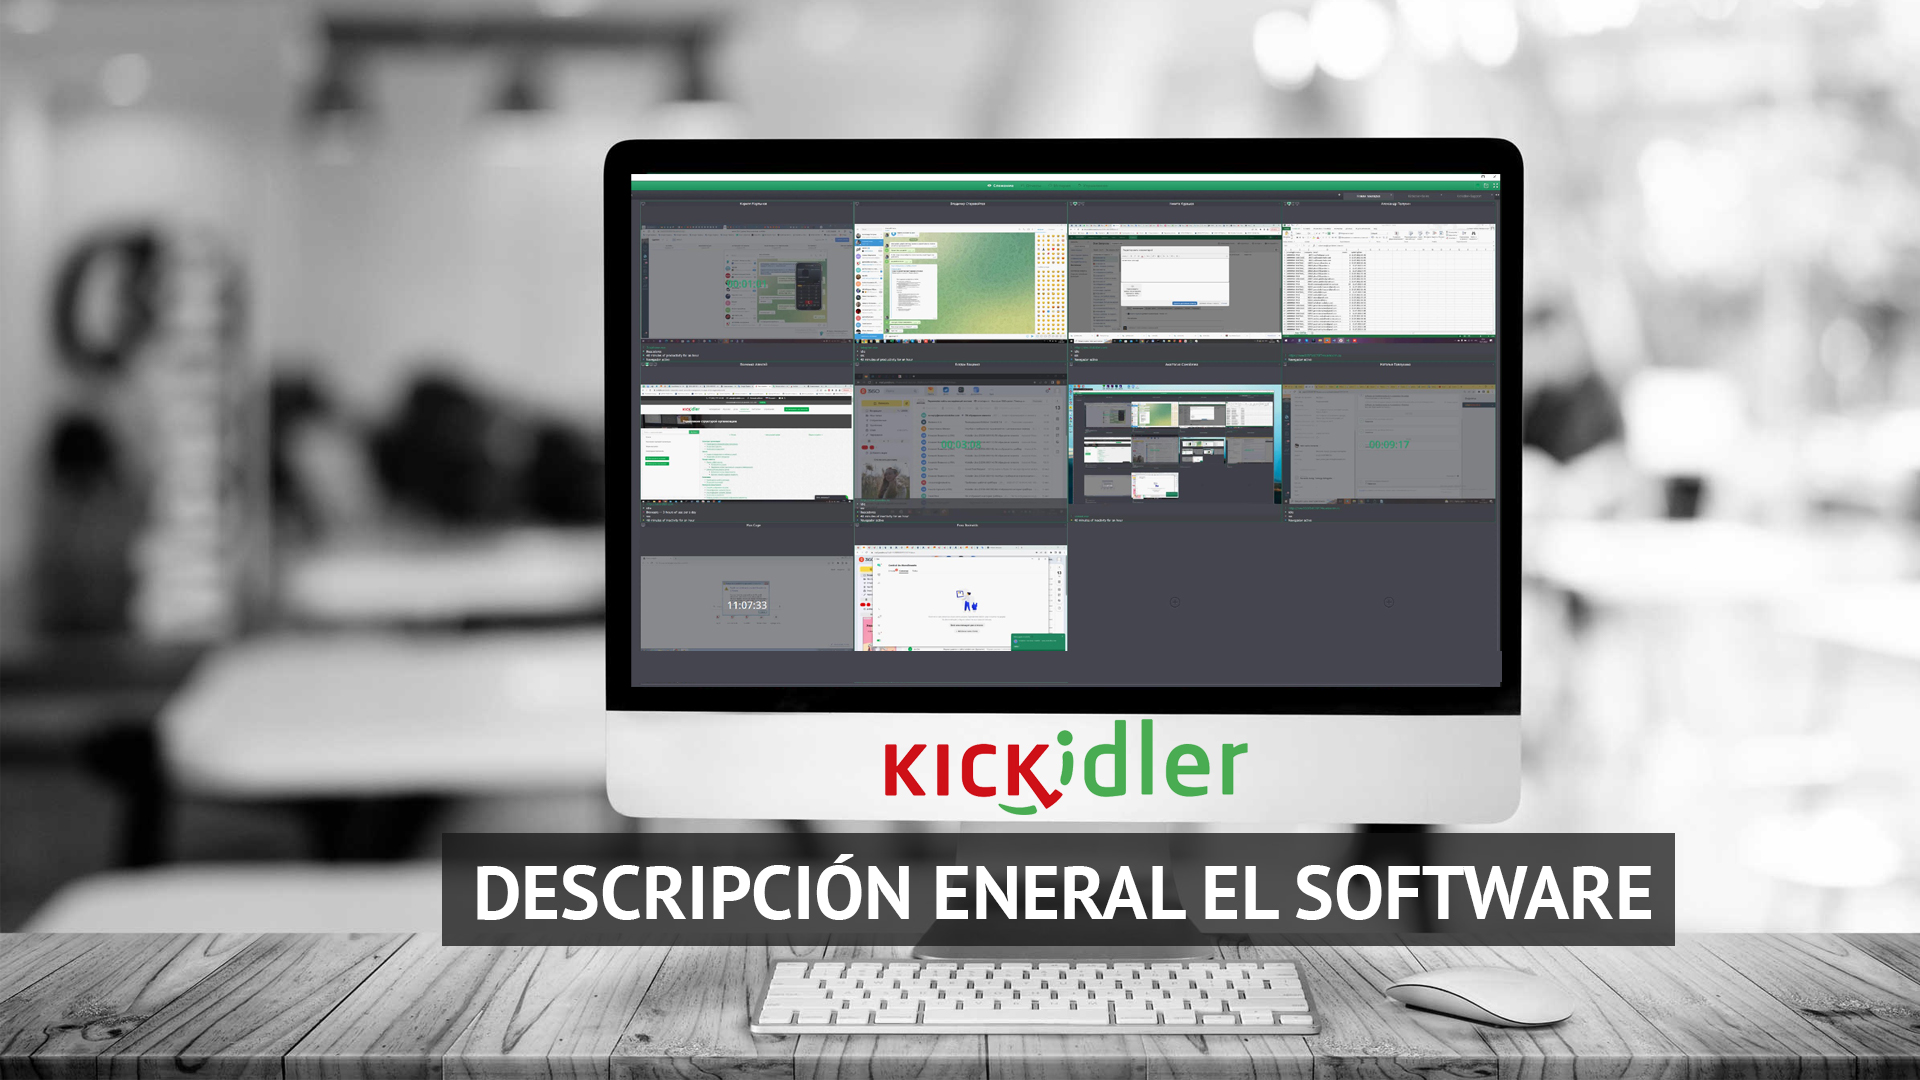 Kickidler Software Overview